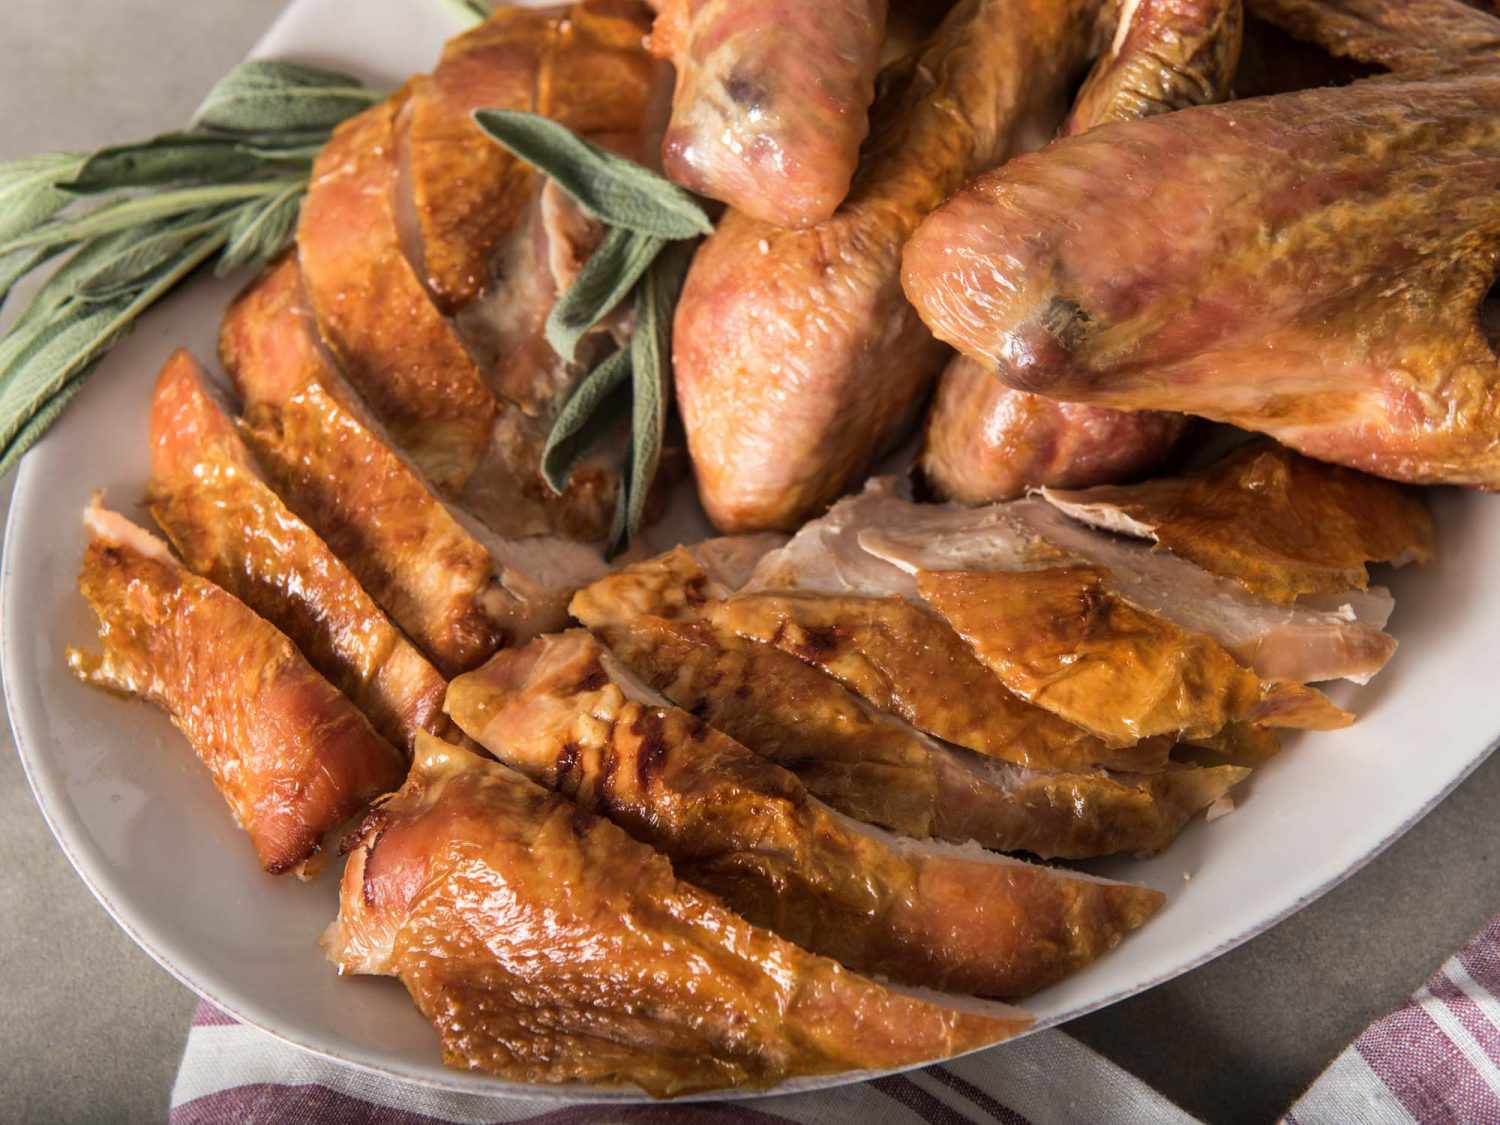 火鸡肉:从火鸡上切下的肉，经过部分烘烤